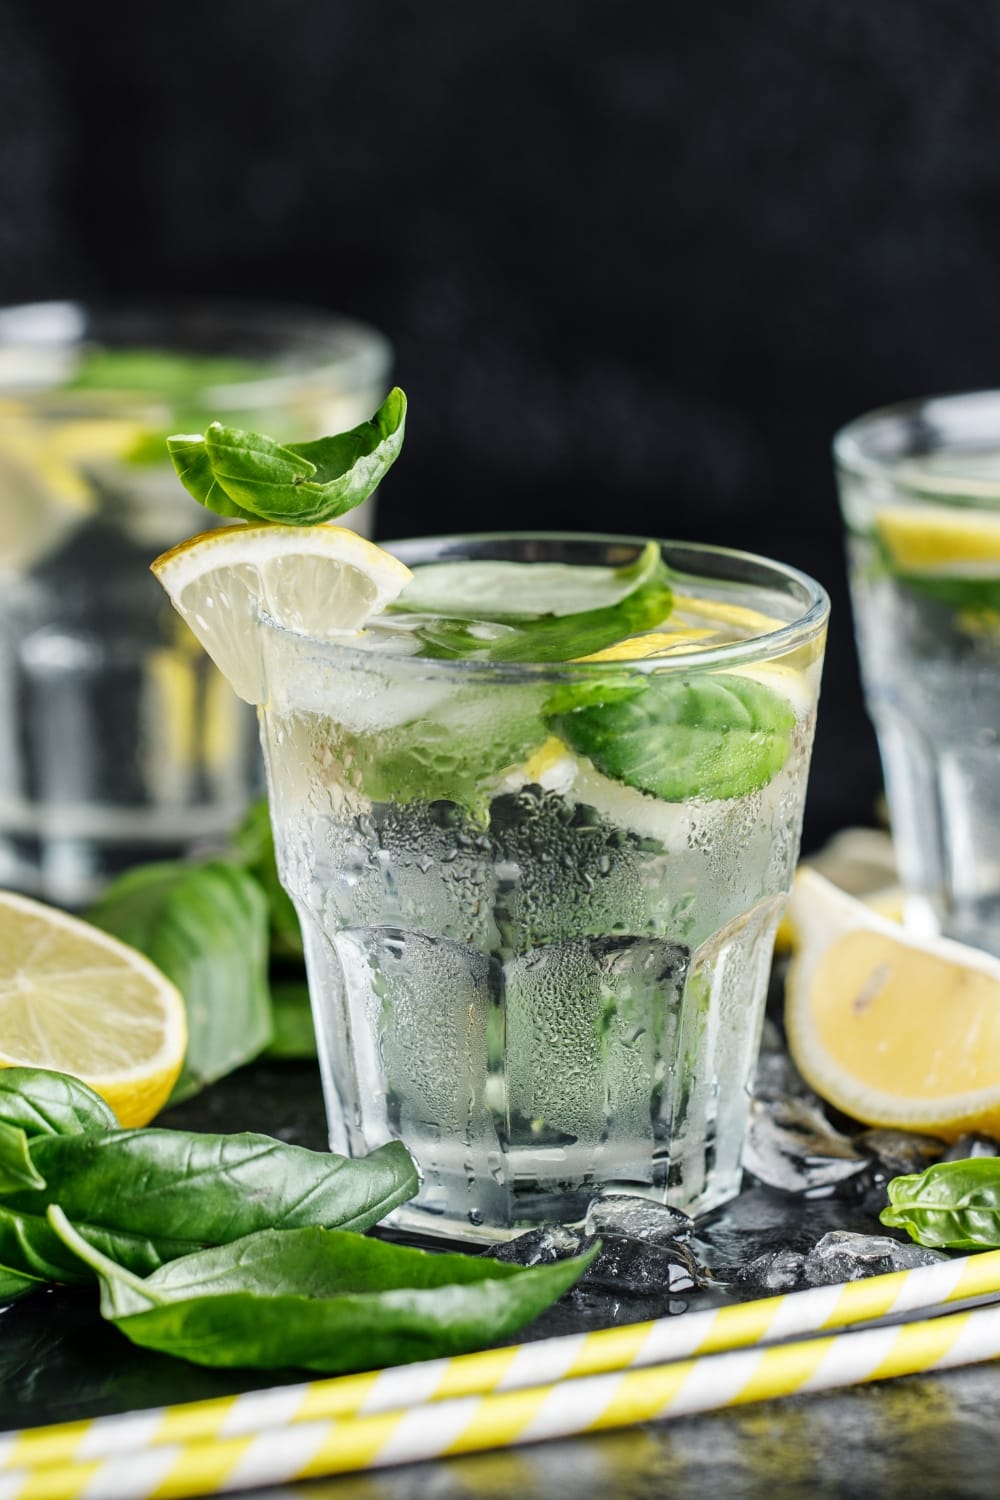 https://insanelygoodrecipes.com/wp-content/uploads/2023/01/Basil-Lemonade-Vodka-Cocktail-in-Glasses.jpg